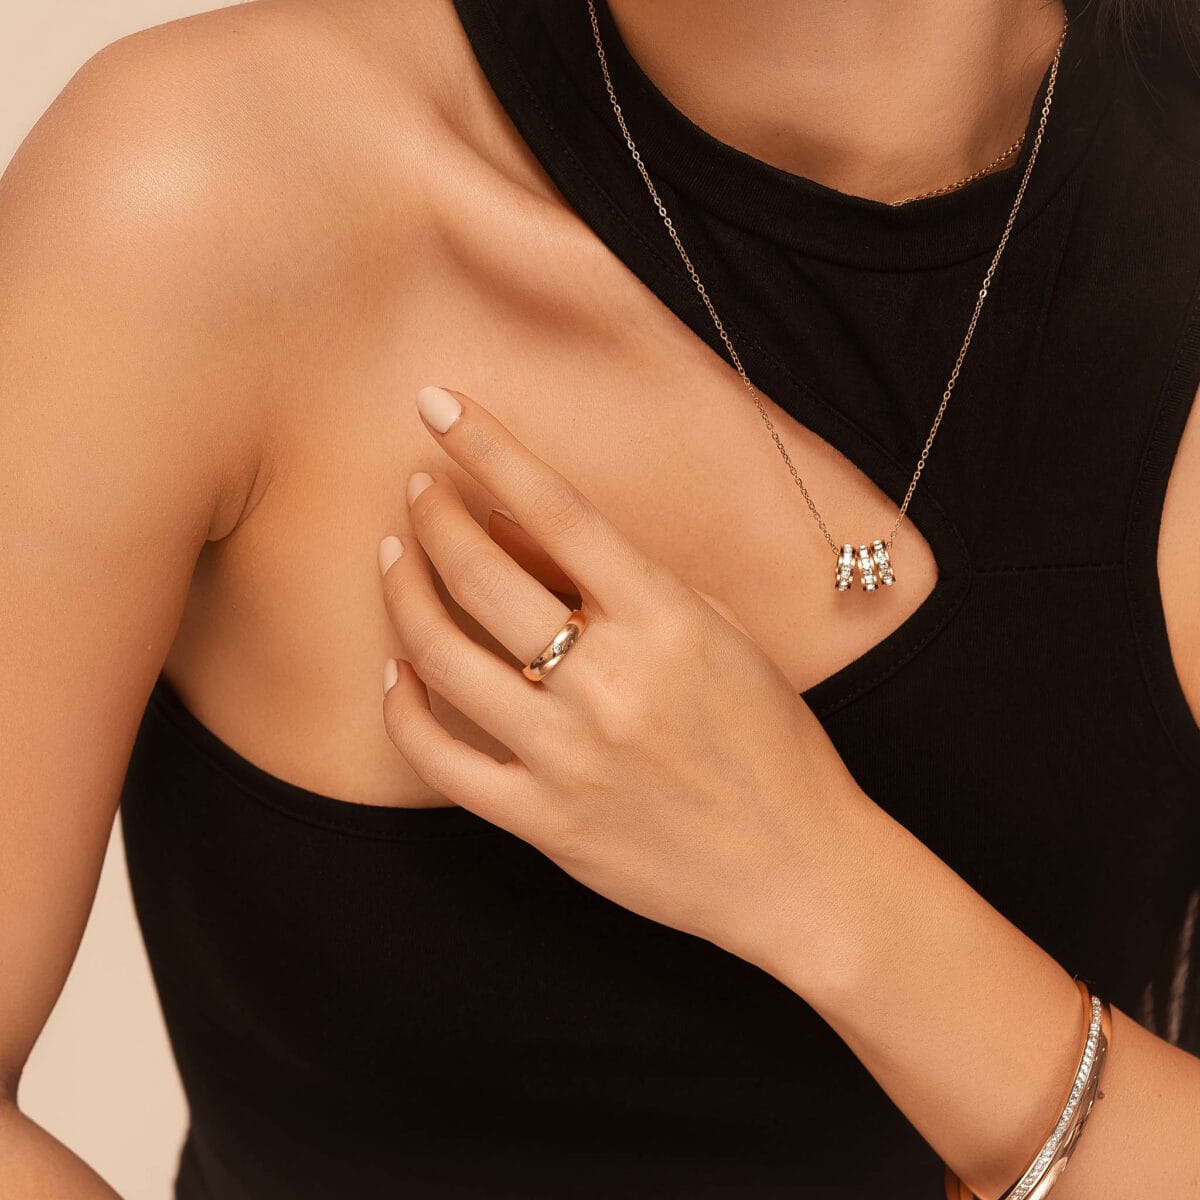 https://m.clubbella.co/product/savi-rose-gold-titanium-ring/ savi rose gold ring (3)